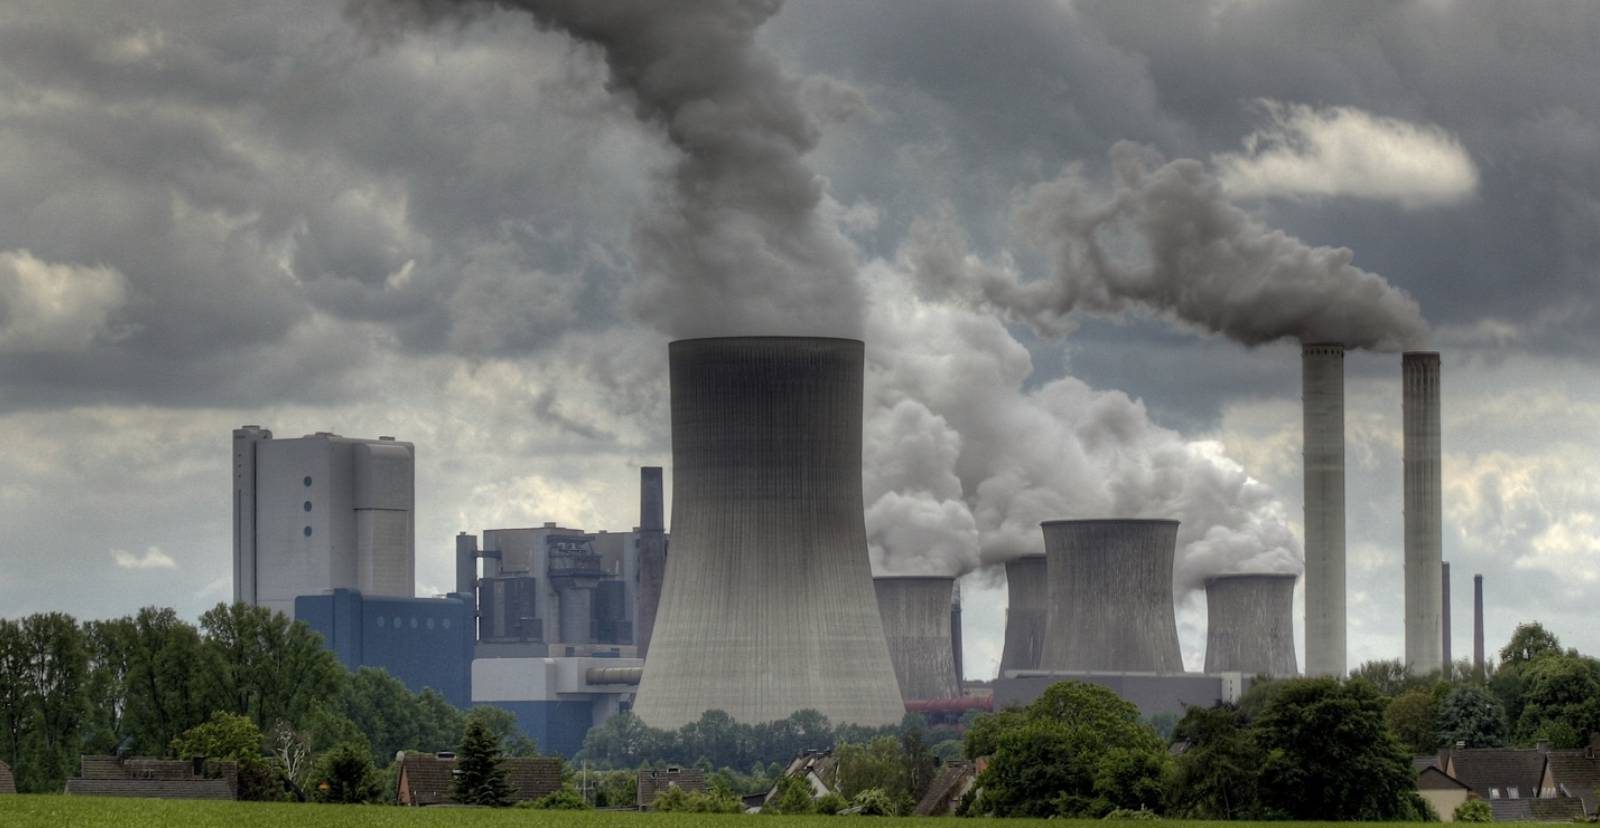 Avrupa’da elektrik üretiminde kullanılan kömür, hava kirliliği yaratmaya devam ediyor